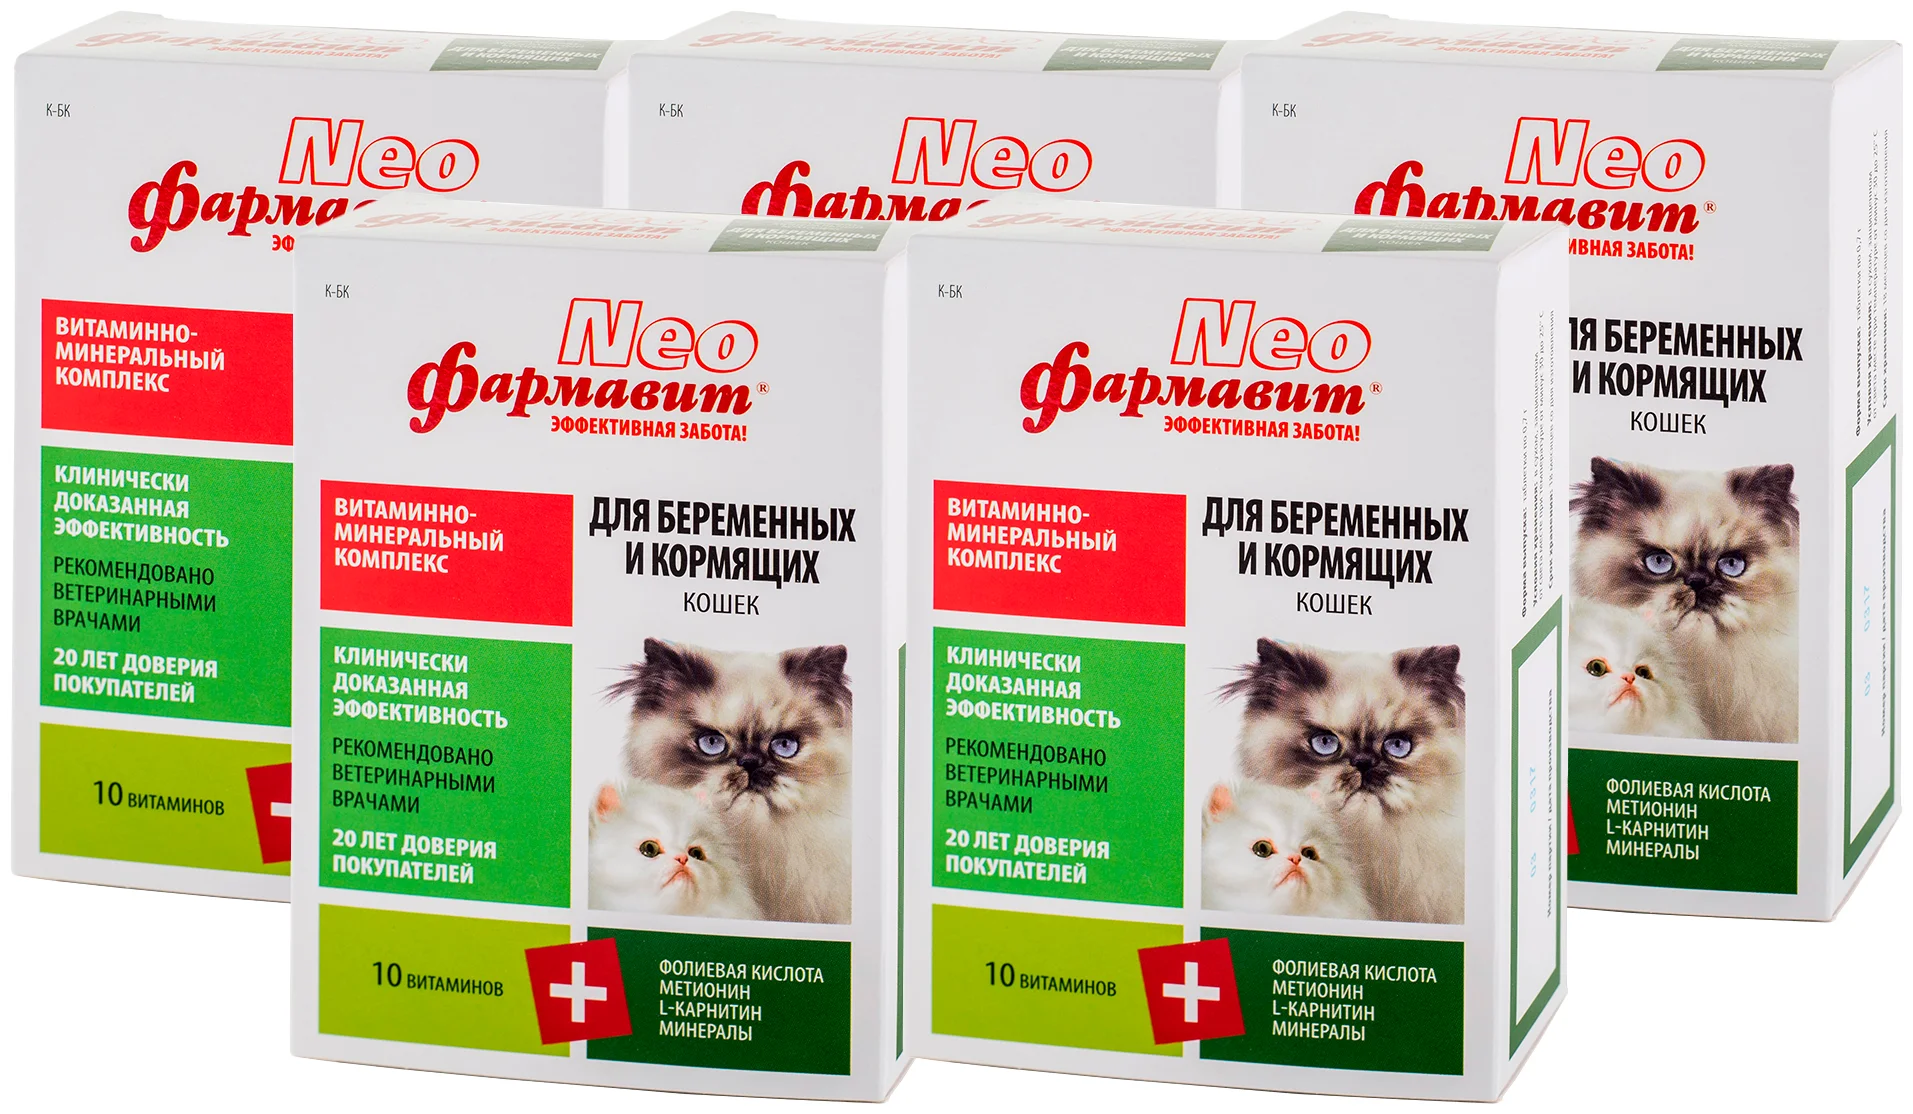 Фармавит Neo "Витаминно-минеральный комплекс для беременных и кормящих кошек" - форма выпуска: таблетки